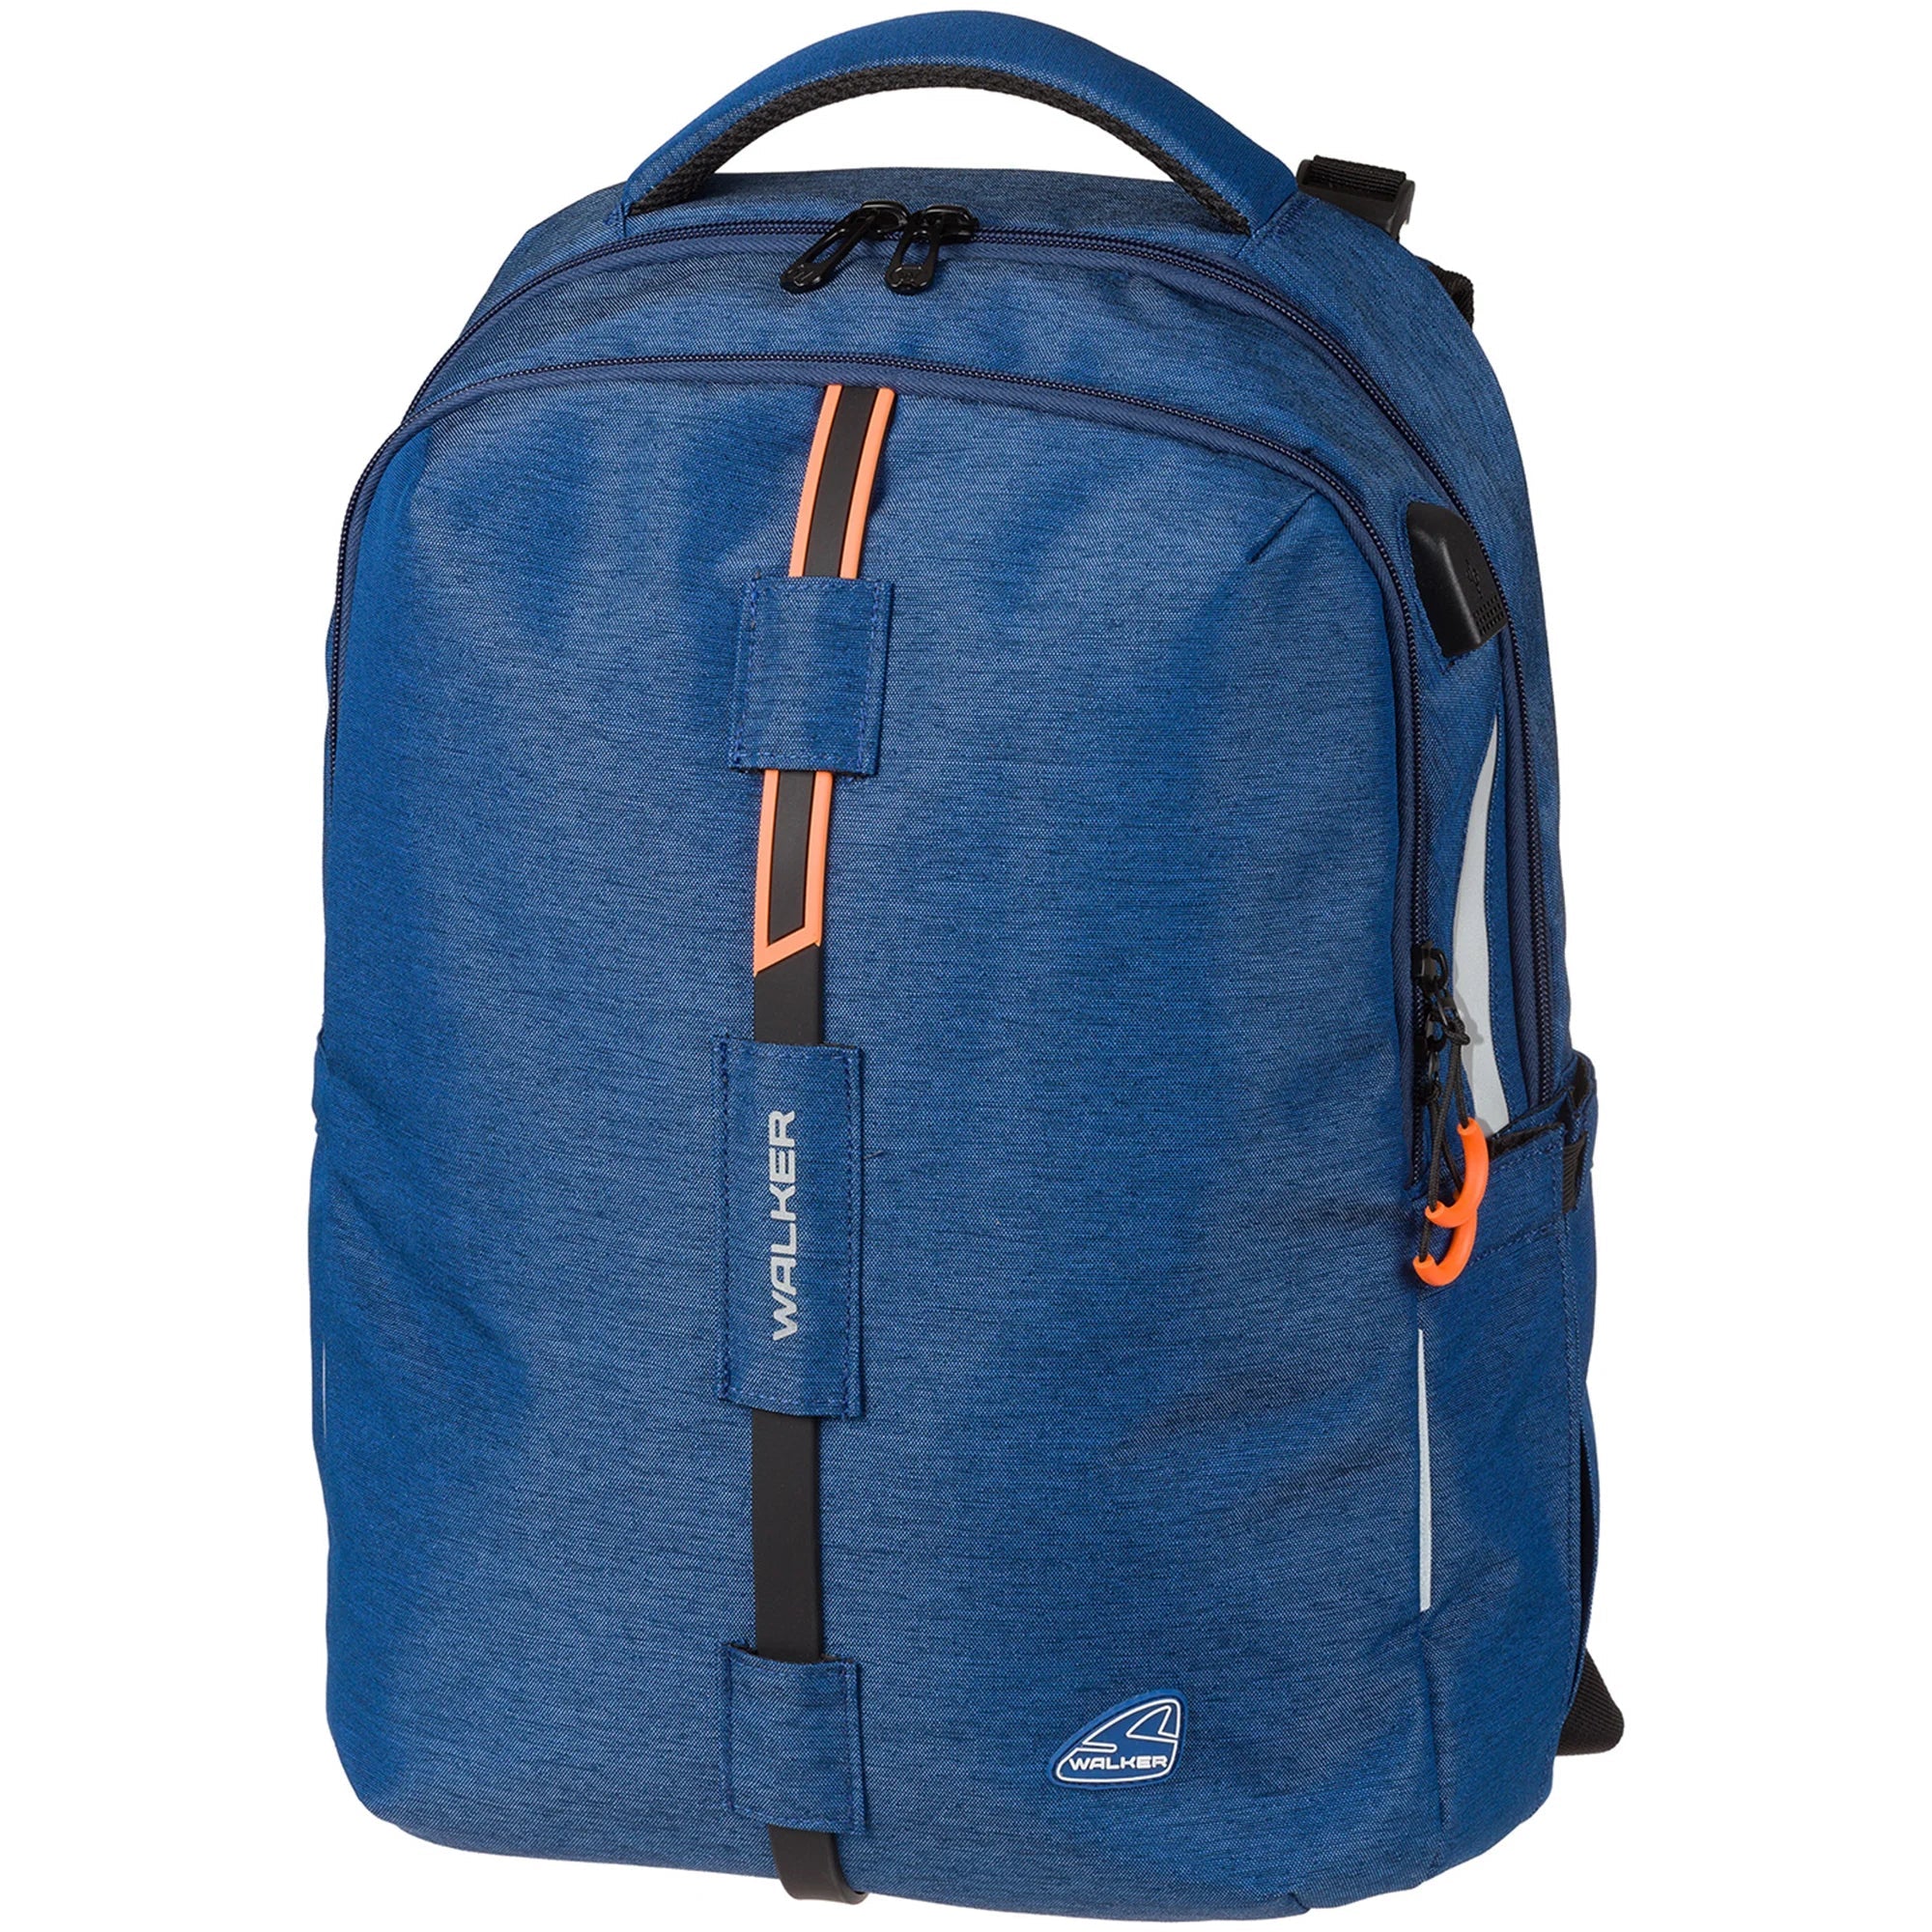 Walker Bags Elite Backpack Melange 46 cm - Navy Melange